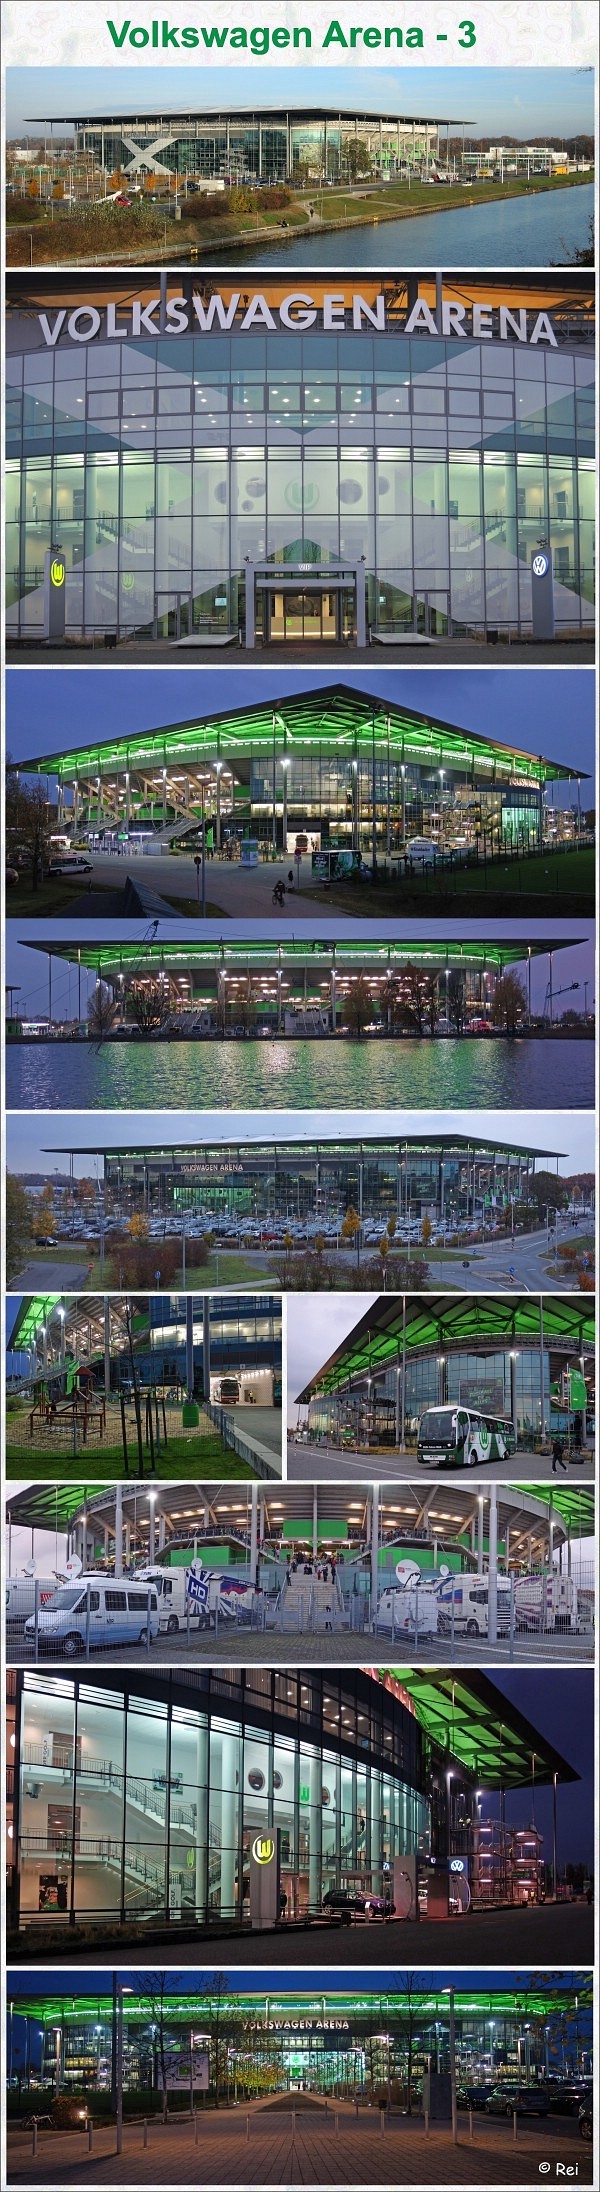 Volkswagen Arena - 3 - VfL Wolfsburg